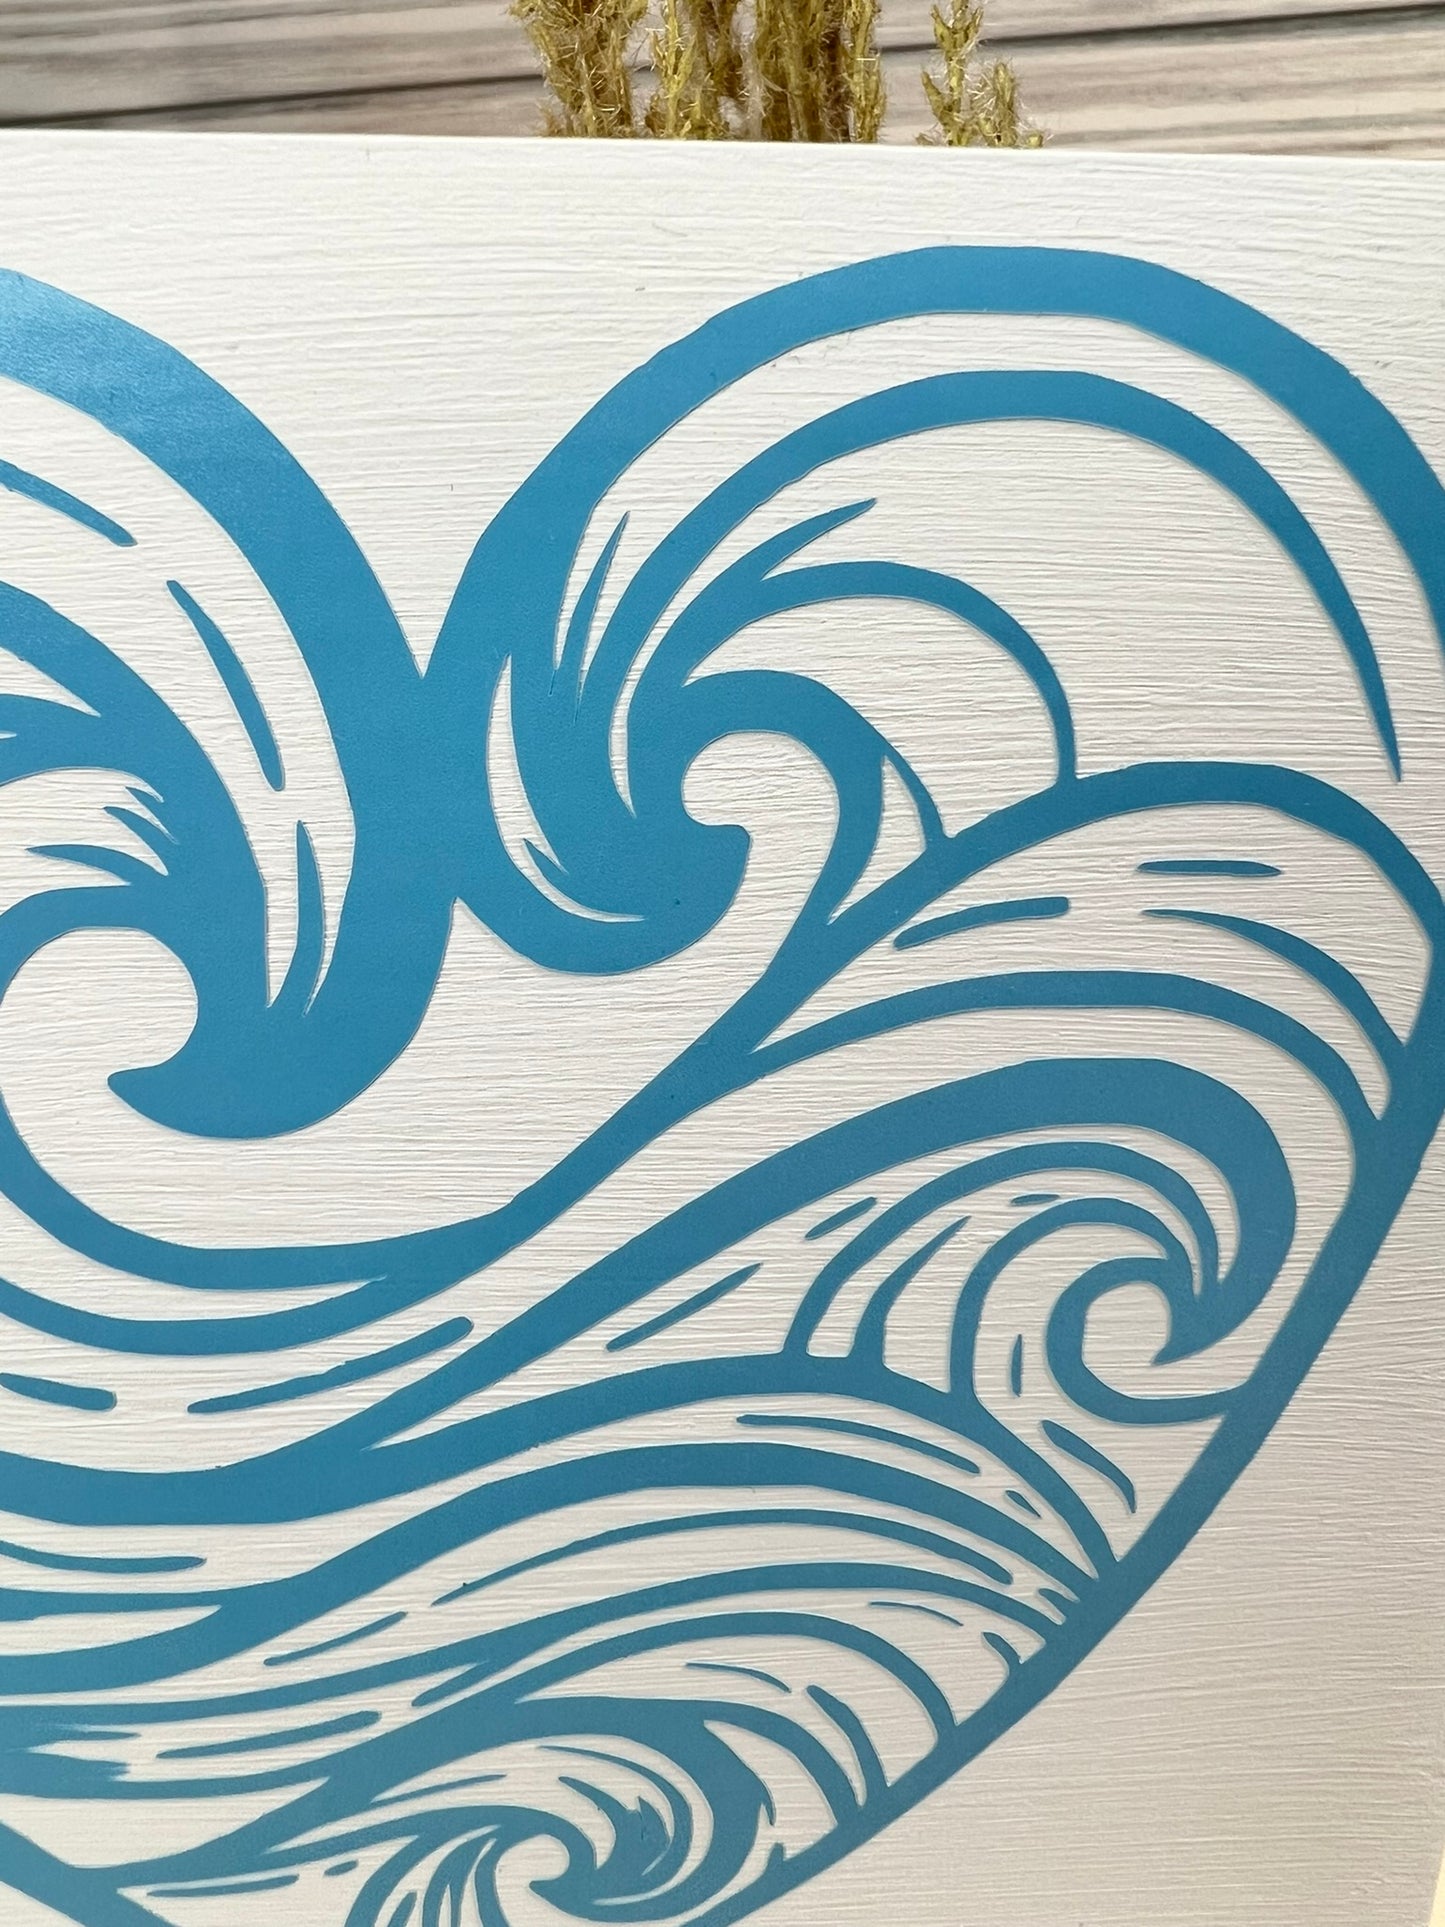 Ocean Wave Heart Sign